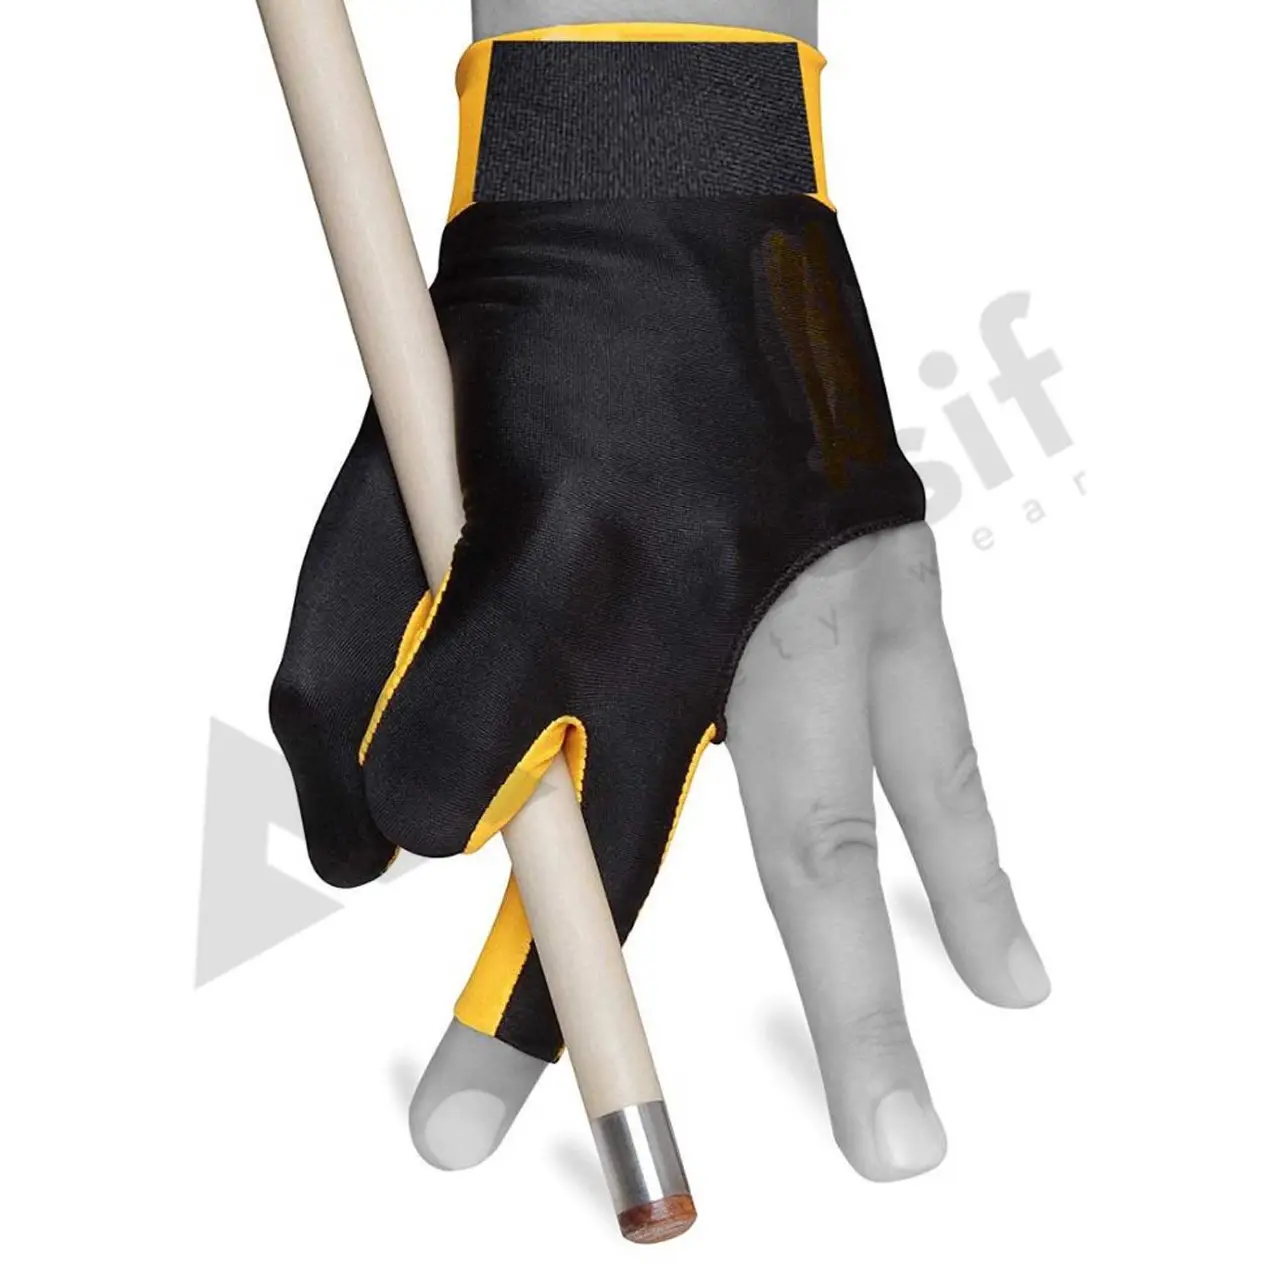 Бильярдная перчатка из спандекса для снукера, бильярдная перчатка для бассейна, аксессуар для снукера с тремя пальцами, используется для снукера, 100 пар на заказ, PK